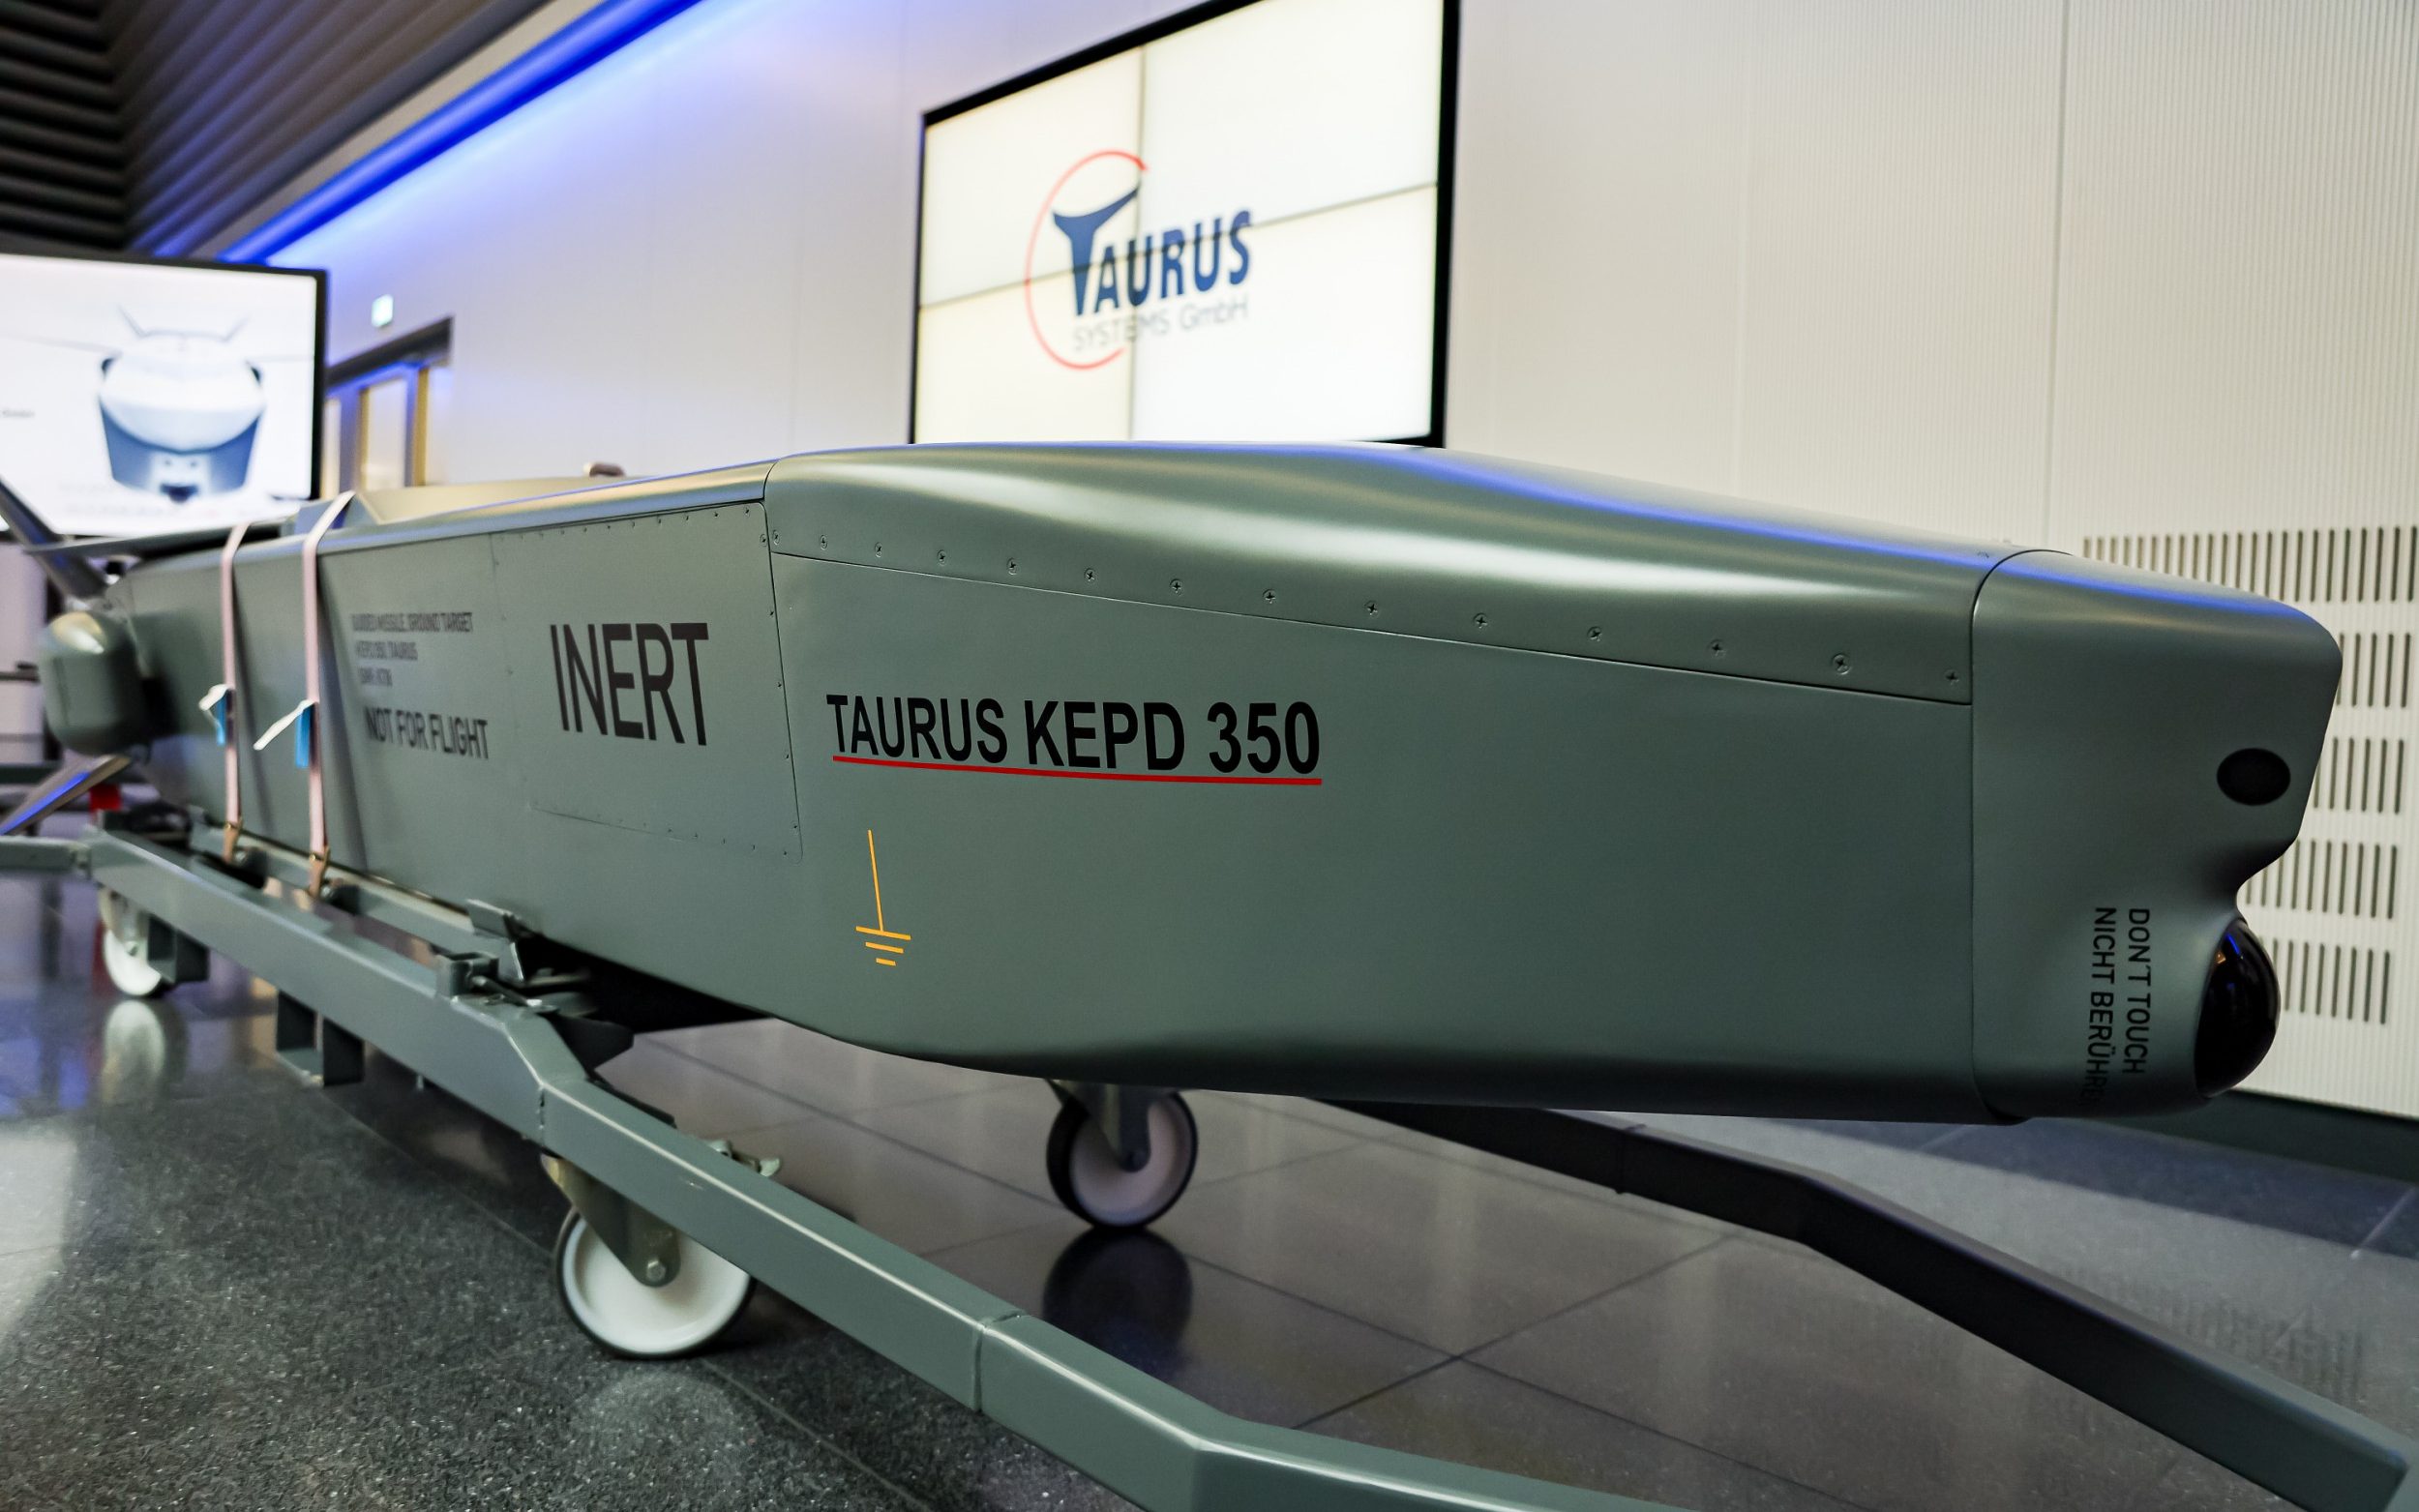 top secret taurus missile meetings leaked online in security lapse